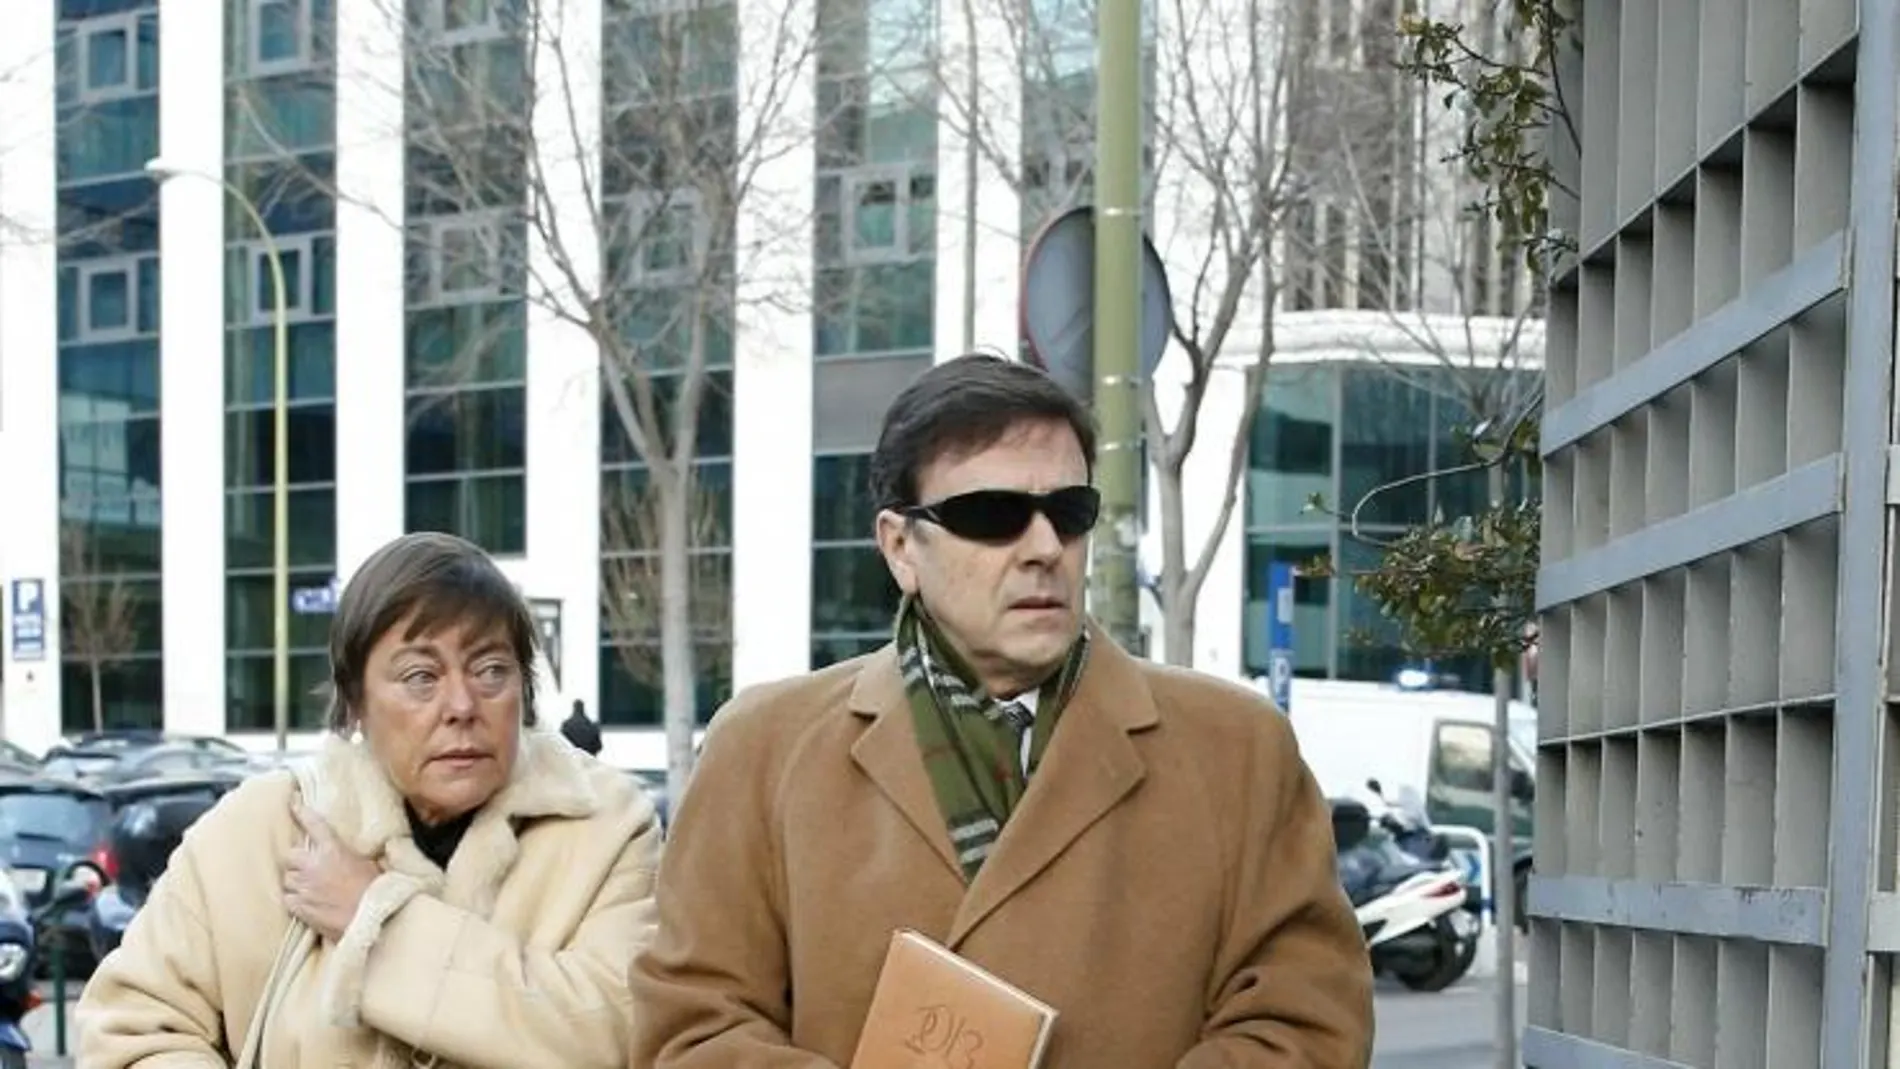 El doctor Eufemiano Fuentes, principal acusado en el juicio de la Operación Puerto, junto a su hermana Yolanda